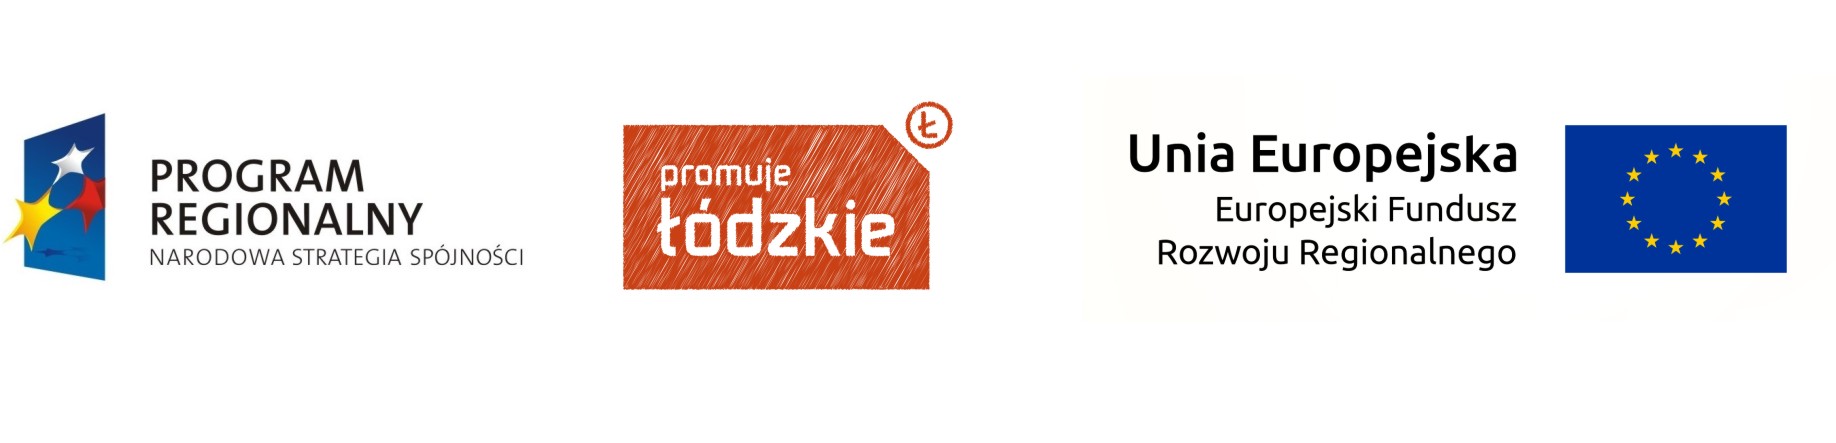 Logo: Program Regionalny Narodowa Strategia Spójności; Promuje Łódzkie; Unia Europejska